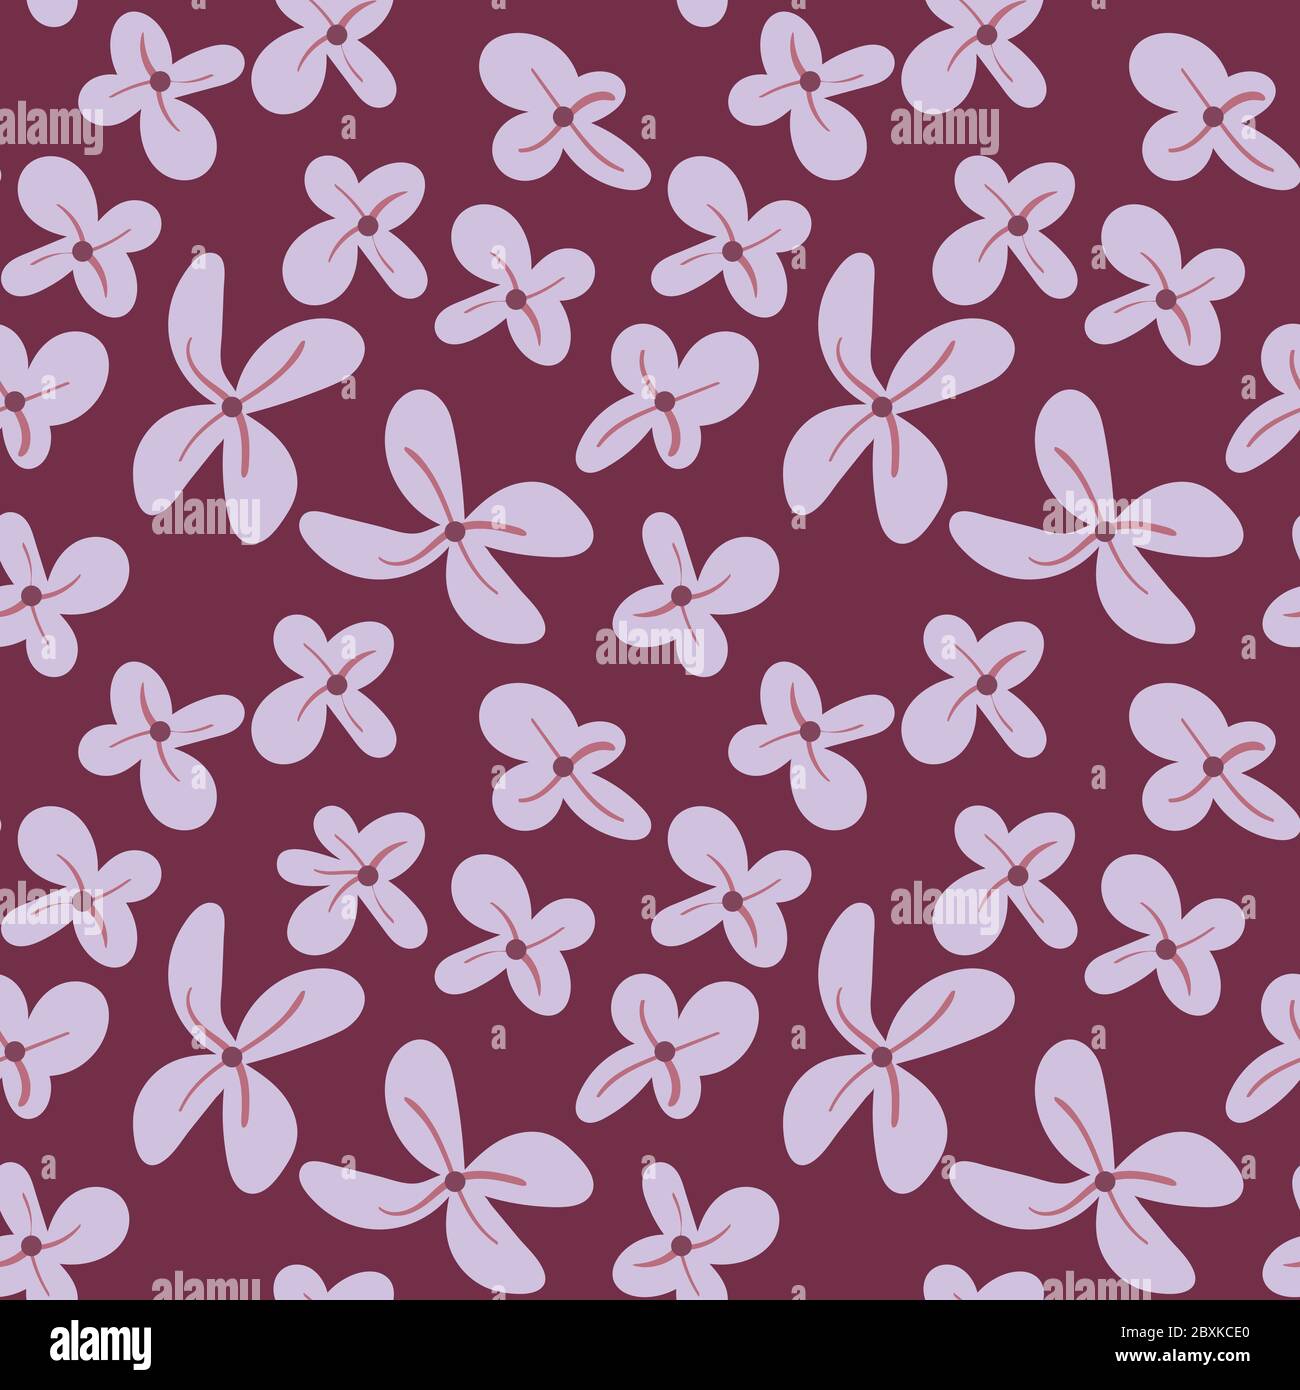 Flieder Nahtloses Muster. Handgezeichnete Blumen auf purpurfarbenem Hintergrund. Finde eine fünfblättrige Blüte. Vektorgrafik. Stock Vektor